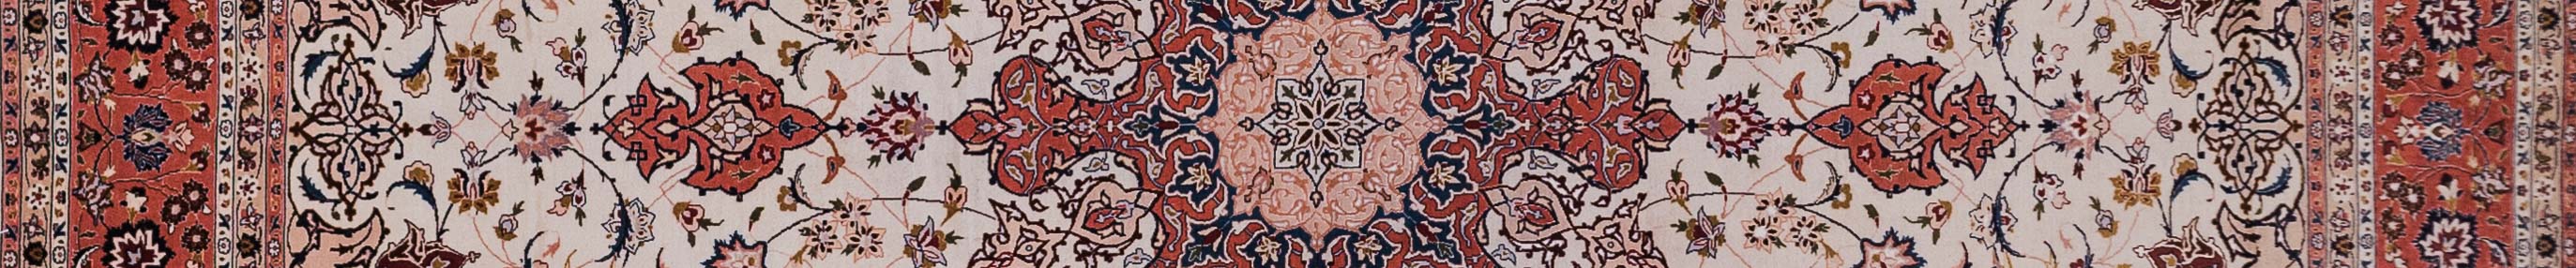 Tabriz Persian Carpet Rug N1Carpet Canada Montreal Tapis Persan 8350